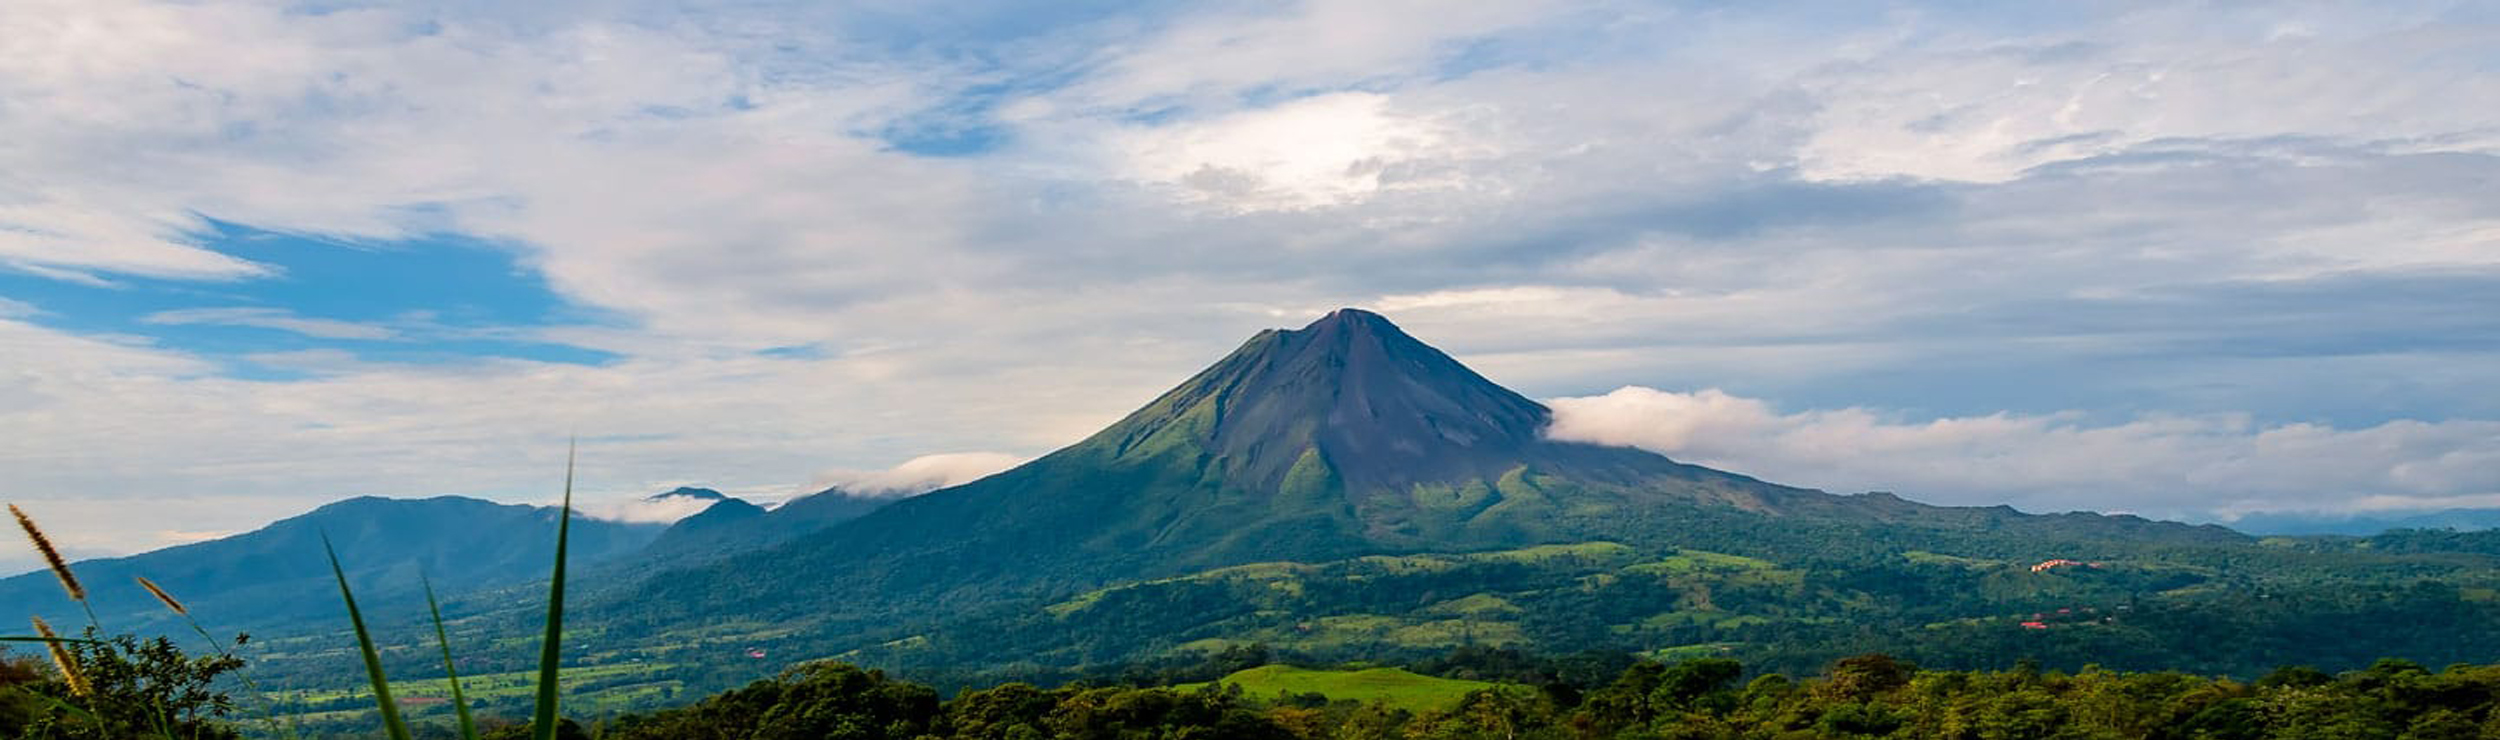 DMC für Gruppenreisen in Costa Rica